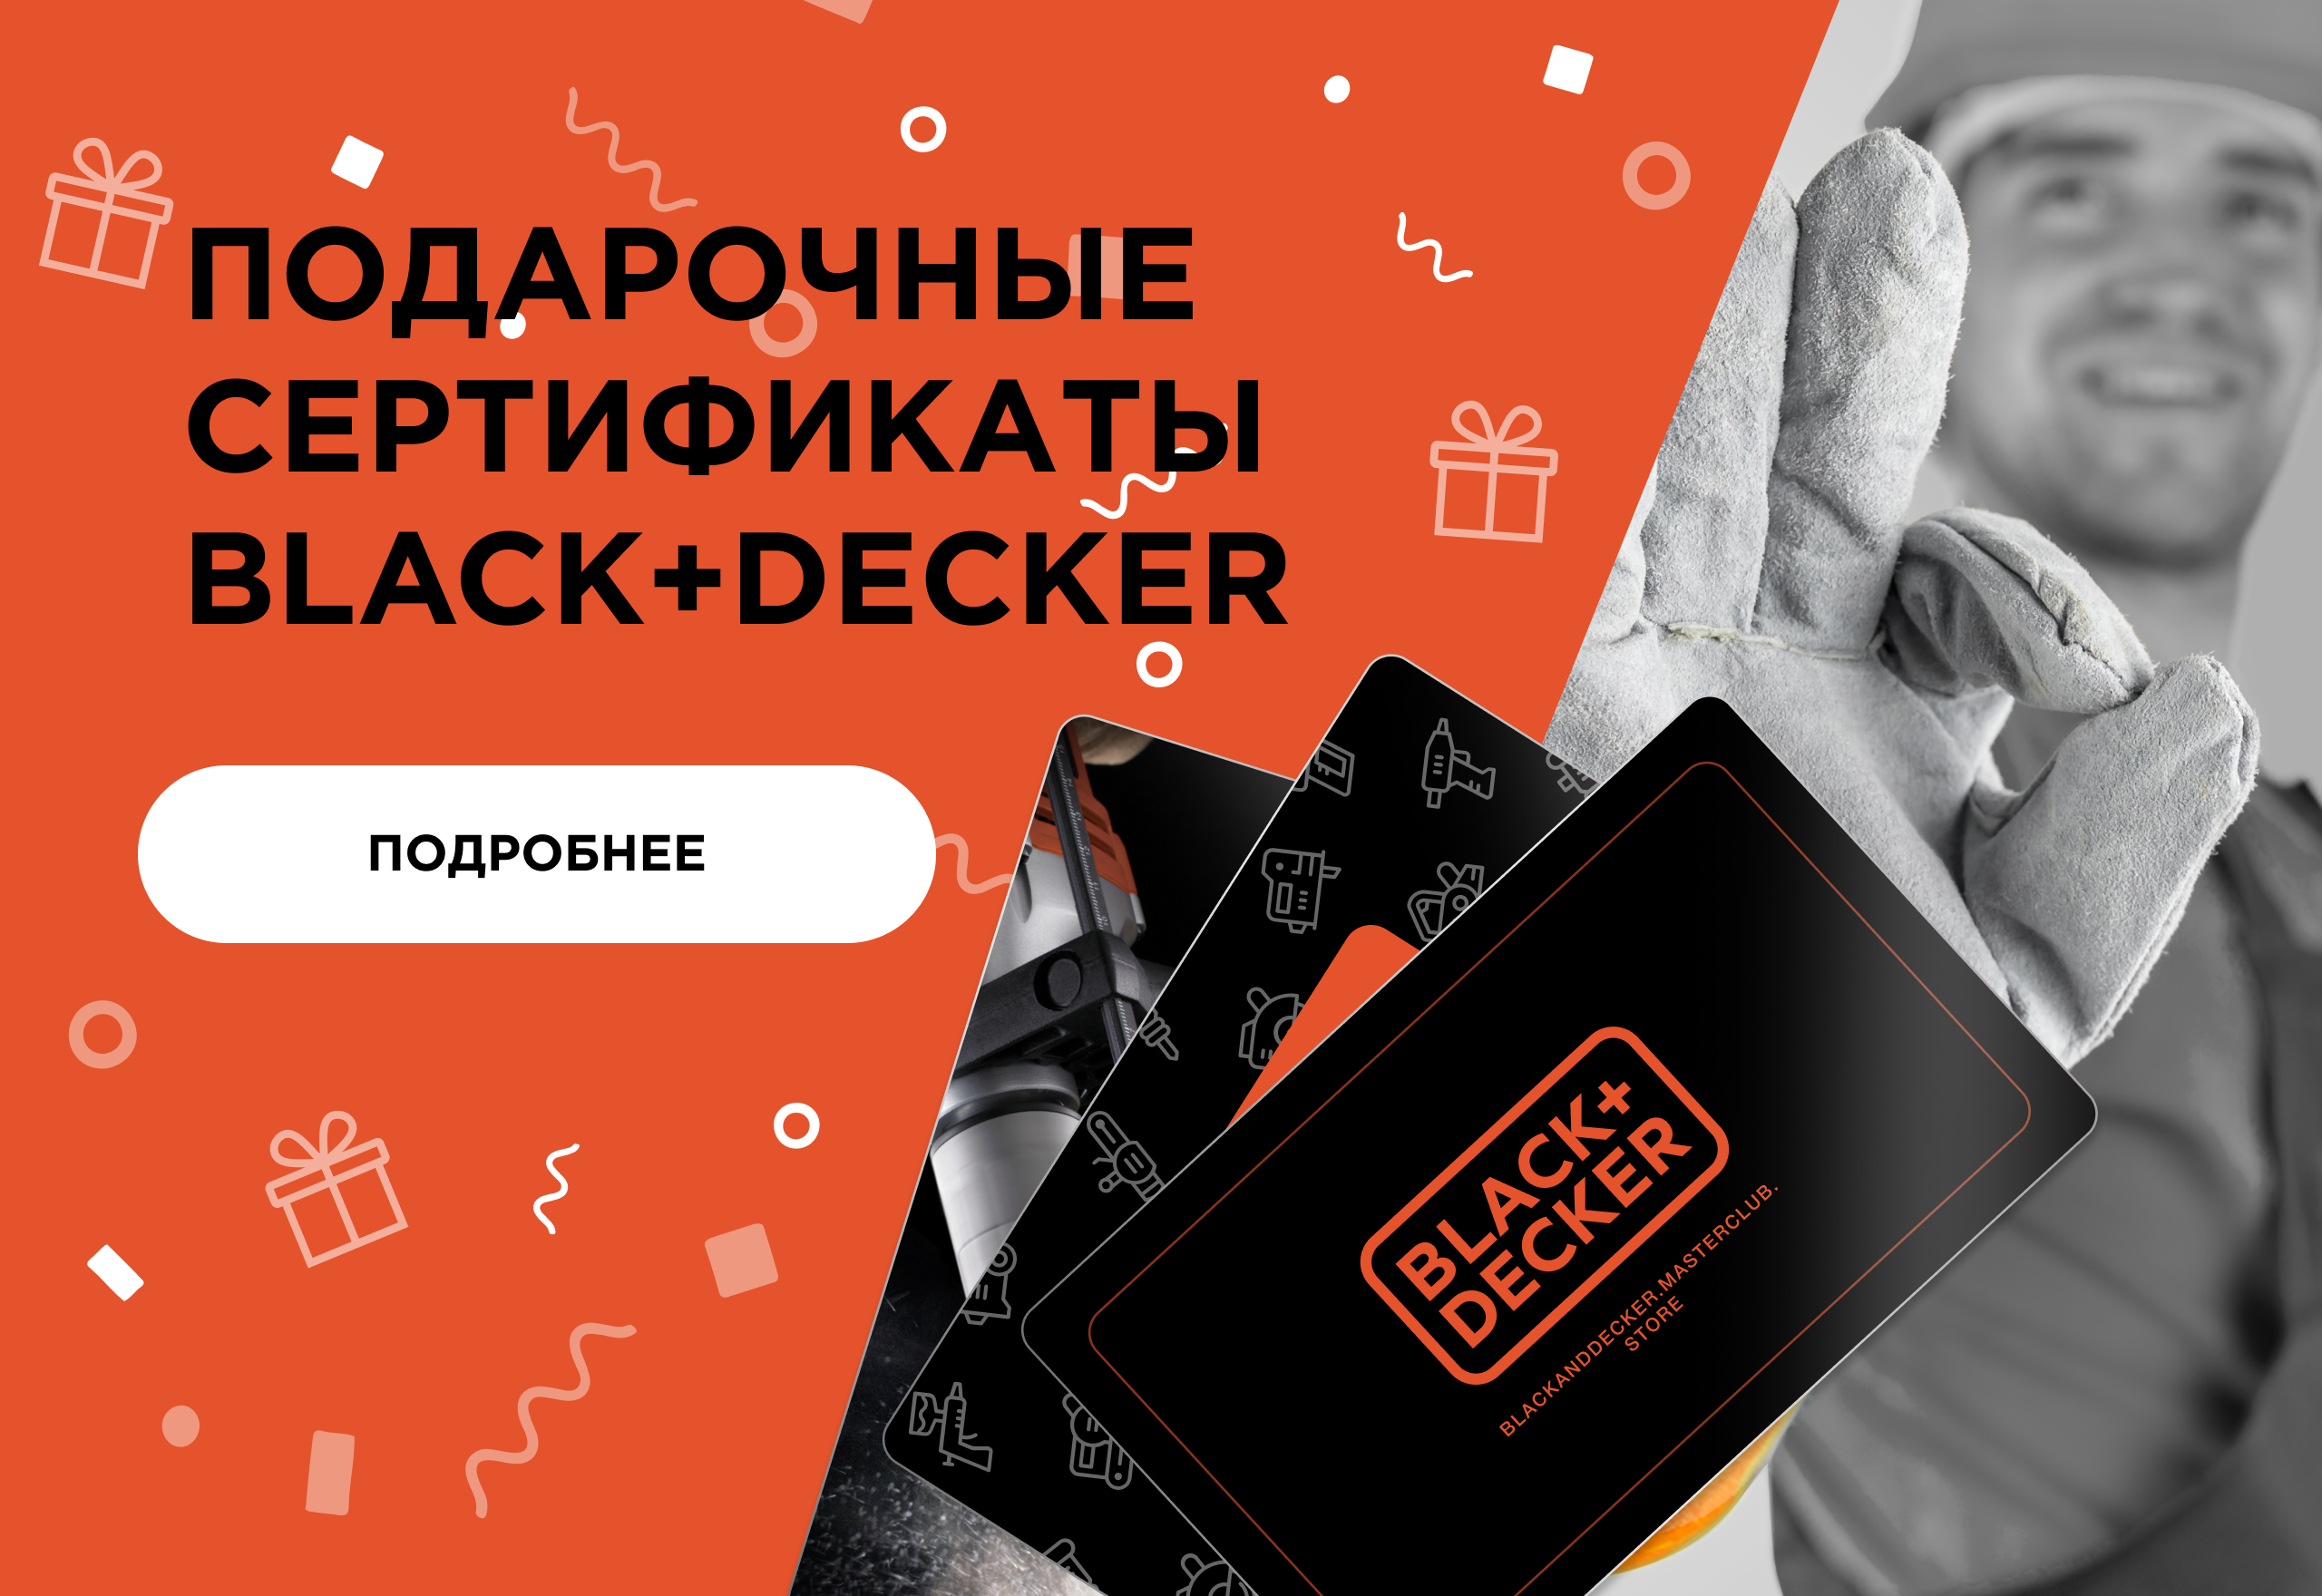 Подарочные сертификаты Black+Decker